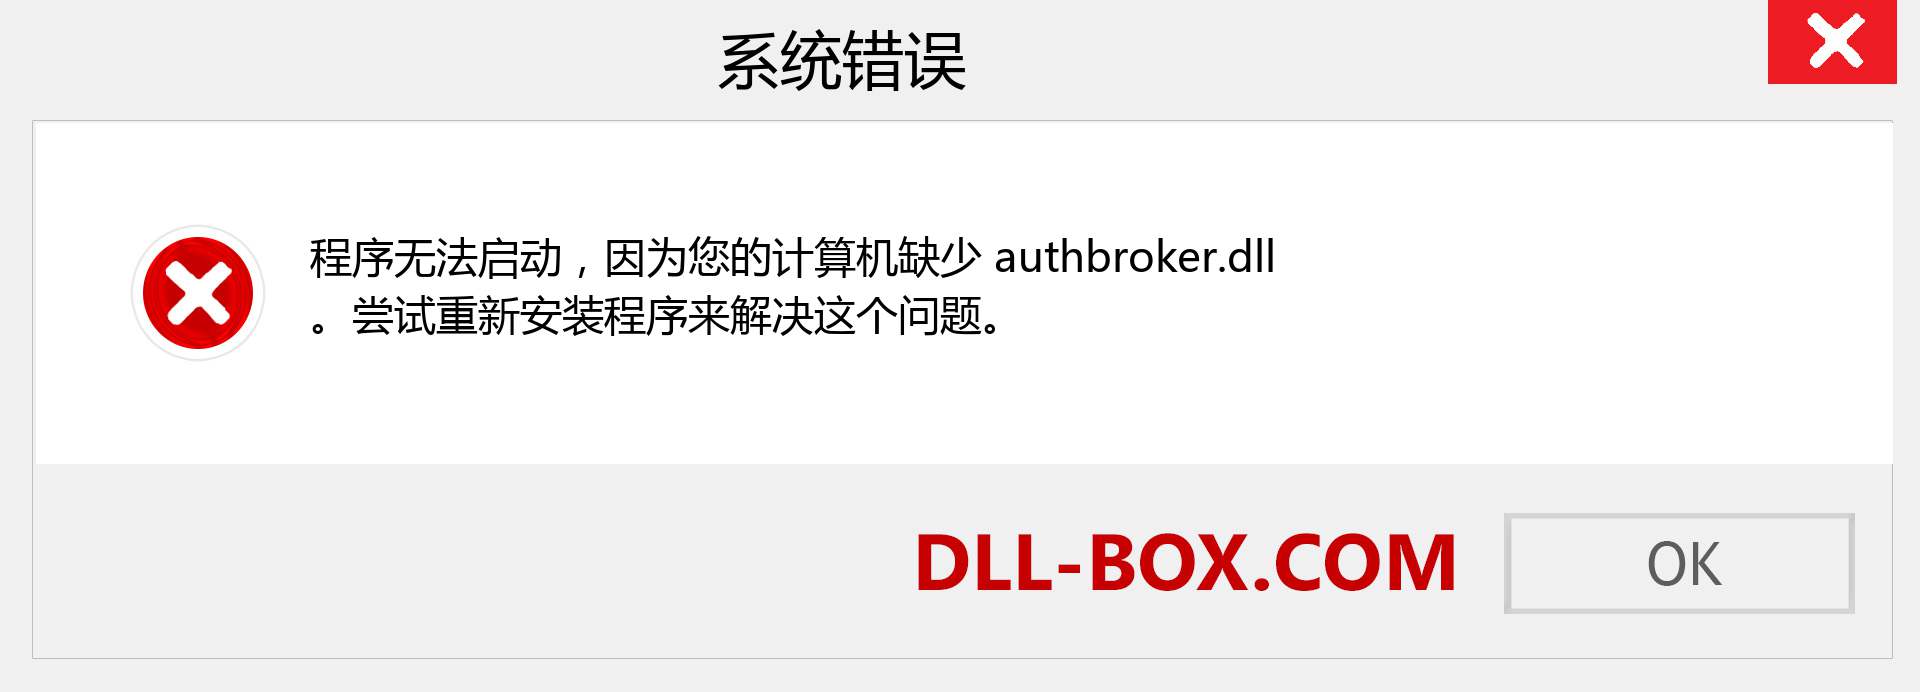 authbroker.dll 文件丢失？。 适用于 Windows 7、8、10 的下载 - 修复 Windows、照片、图像上的 authbroker dll 丢失错误